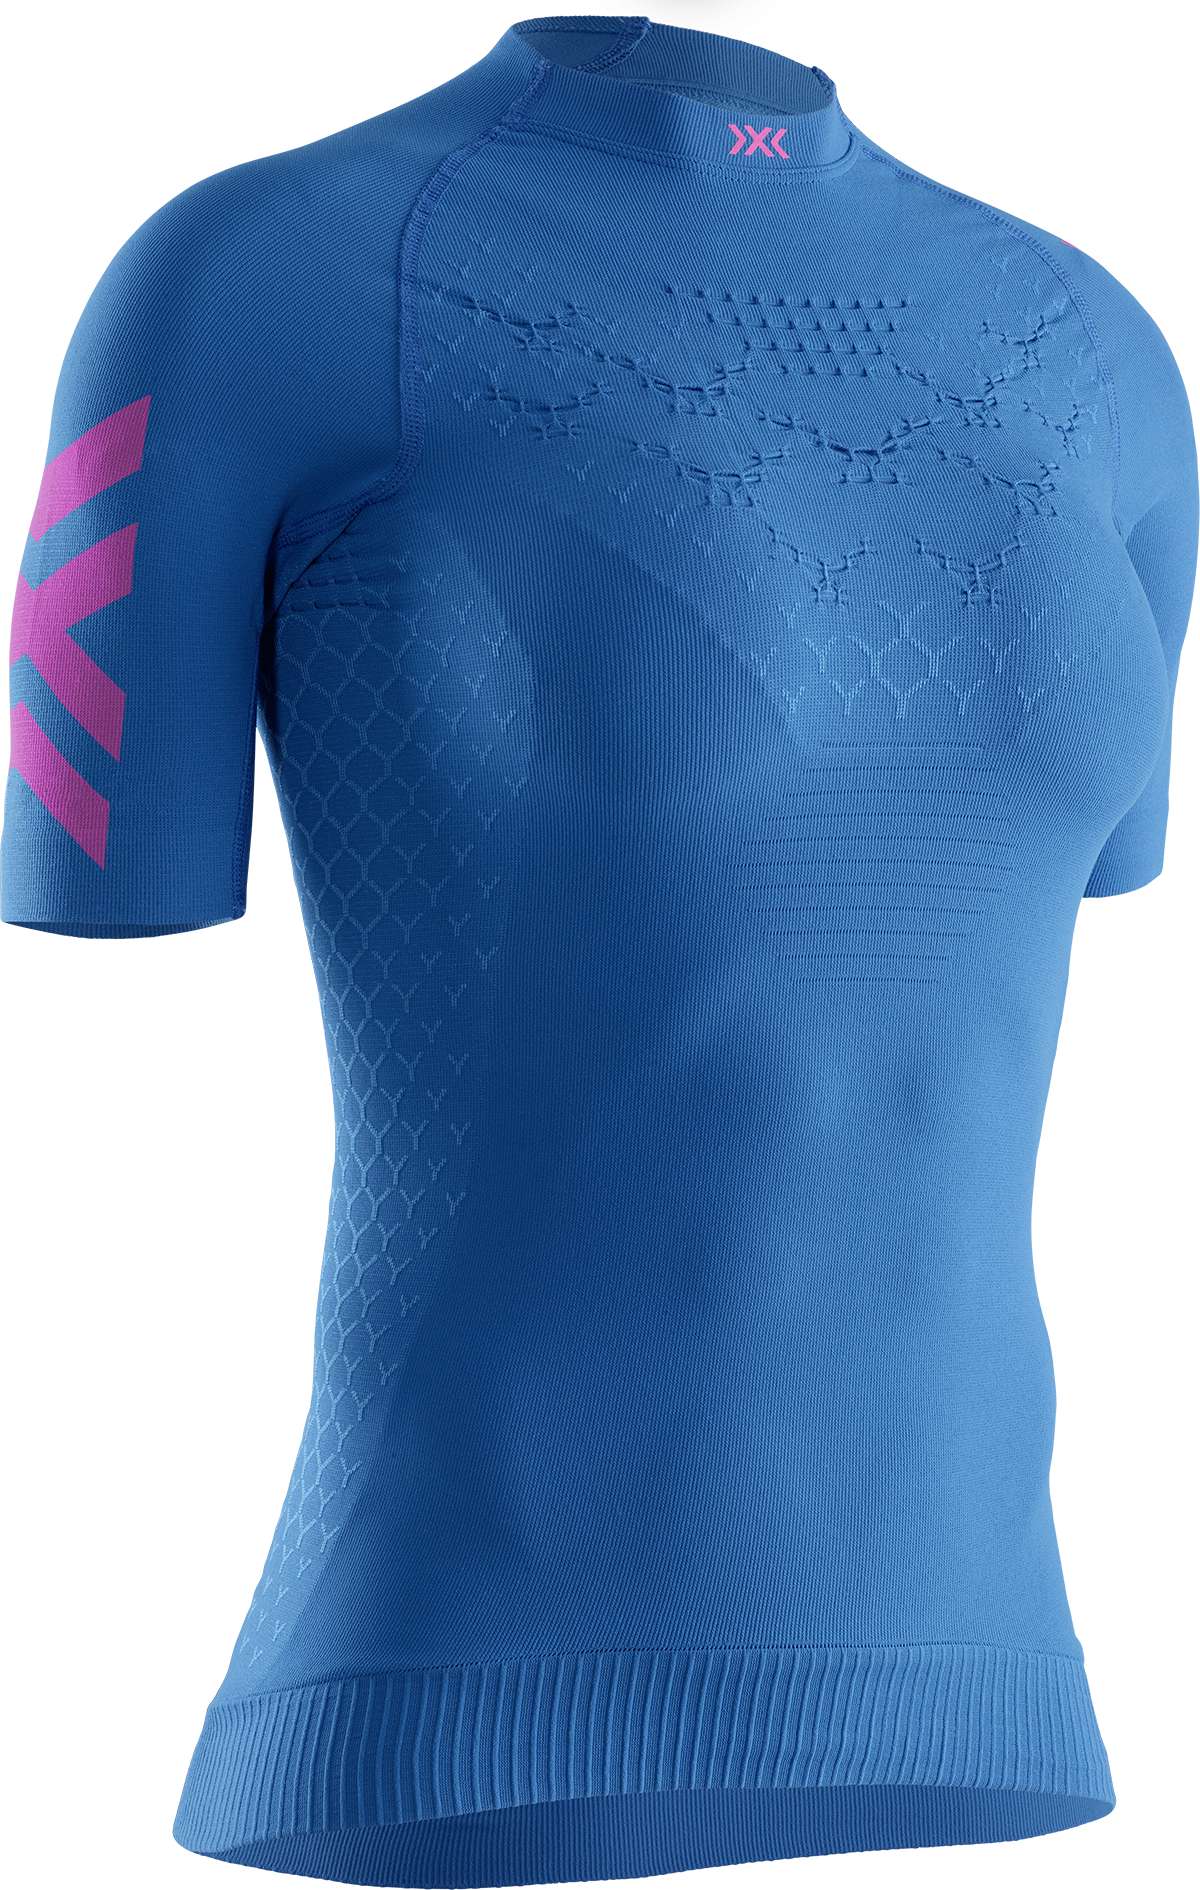 Una versione della maglia a maniche corte TWYCE-RUN SHIRT nella colorazione accattivante blue/flamingo.